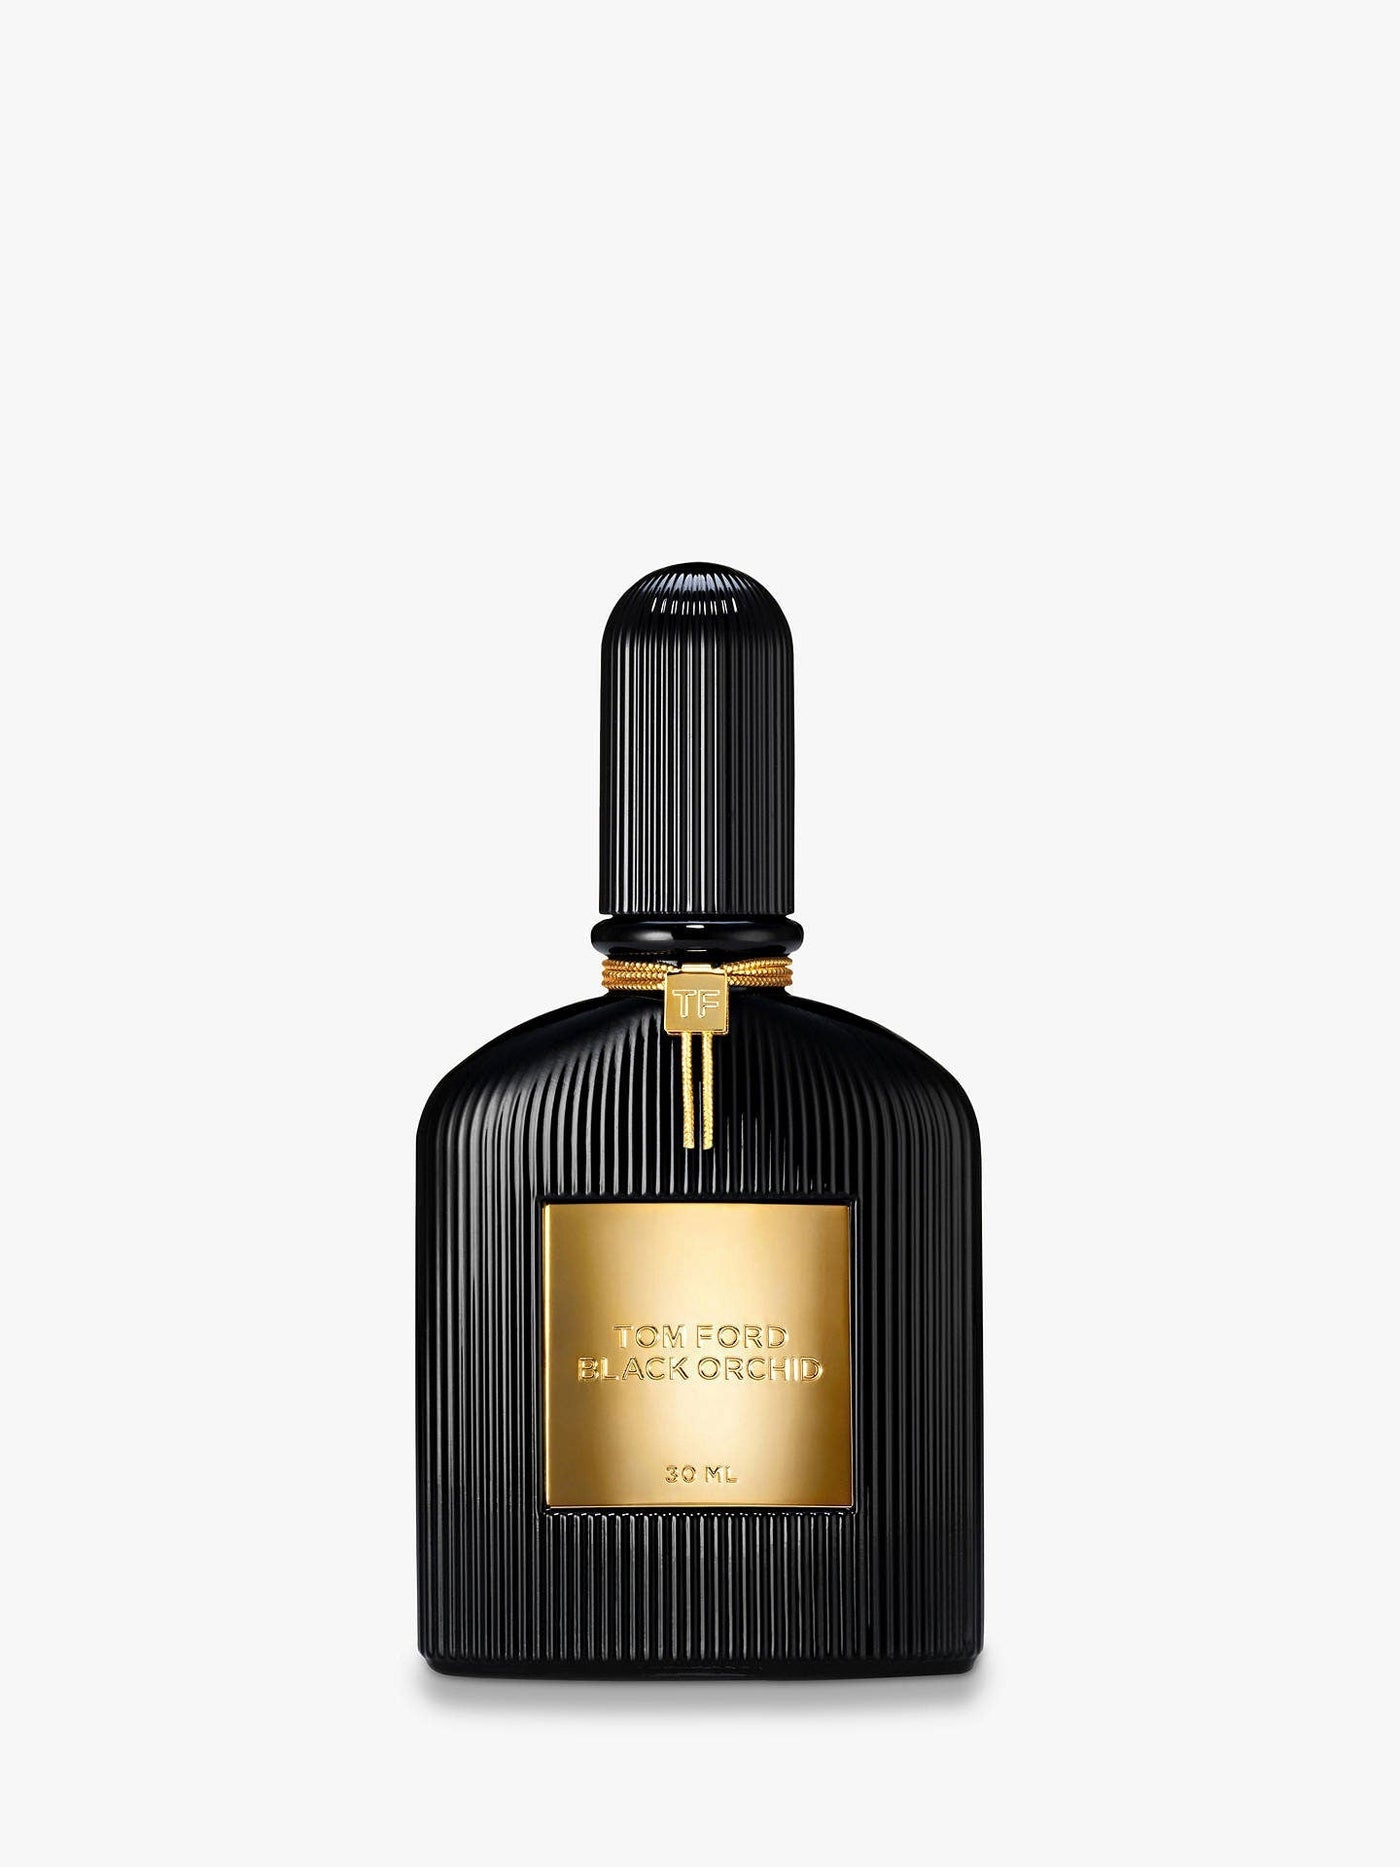 Tom Ford Black Orchid For Women Eau De Parfum 50Ml